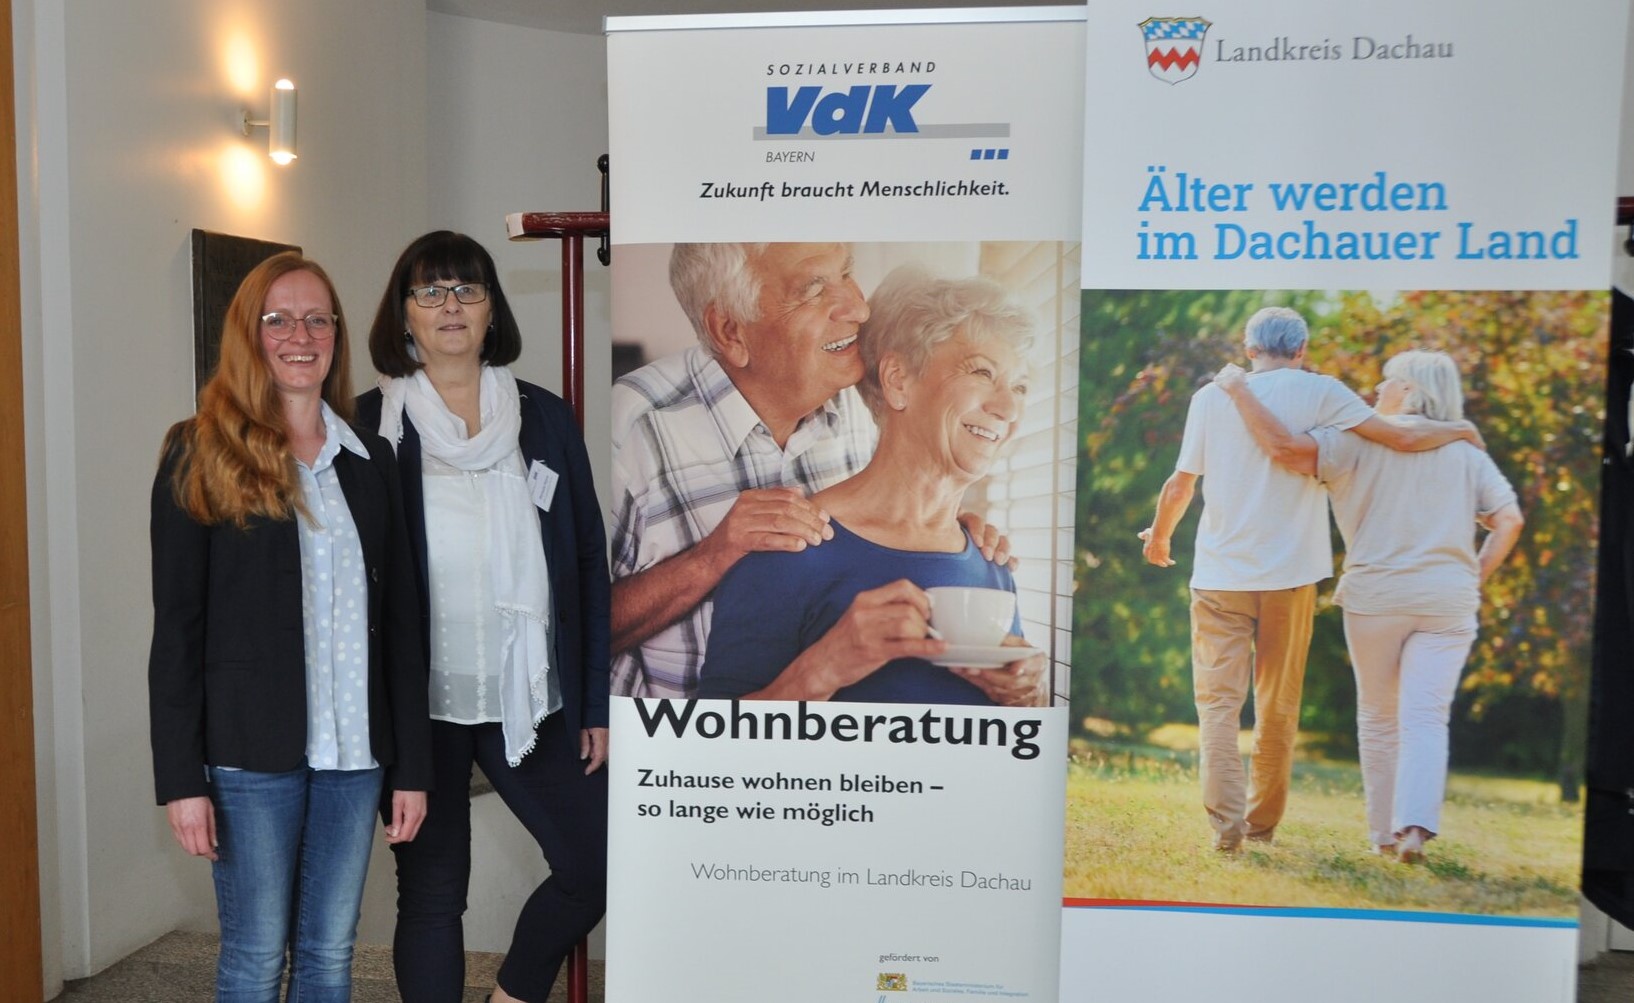 Älter werden im Dachauer Land - Fachtag mit buntem Programm rund um die Fragen einer alternden Gesellschaft 